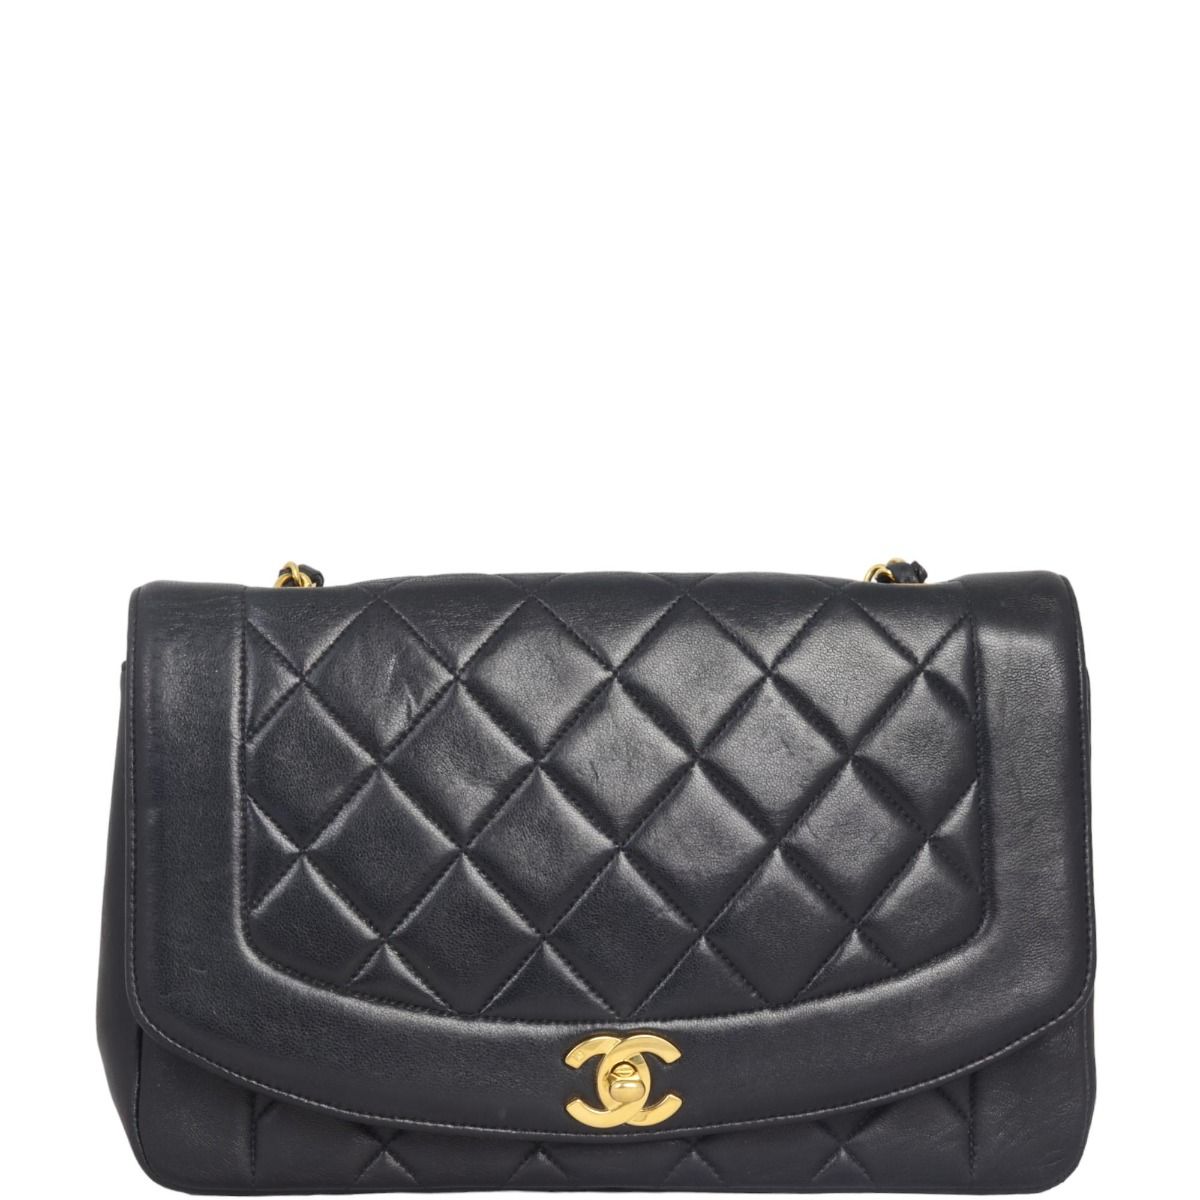 Chanel - Vintage Diana Flap Bag - Black Lambskin - GHW - Vintage